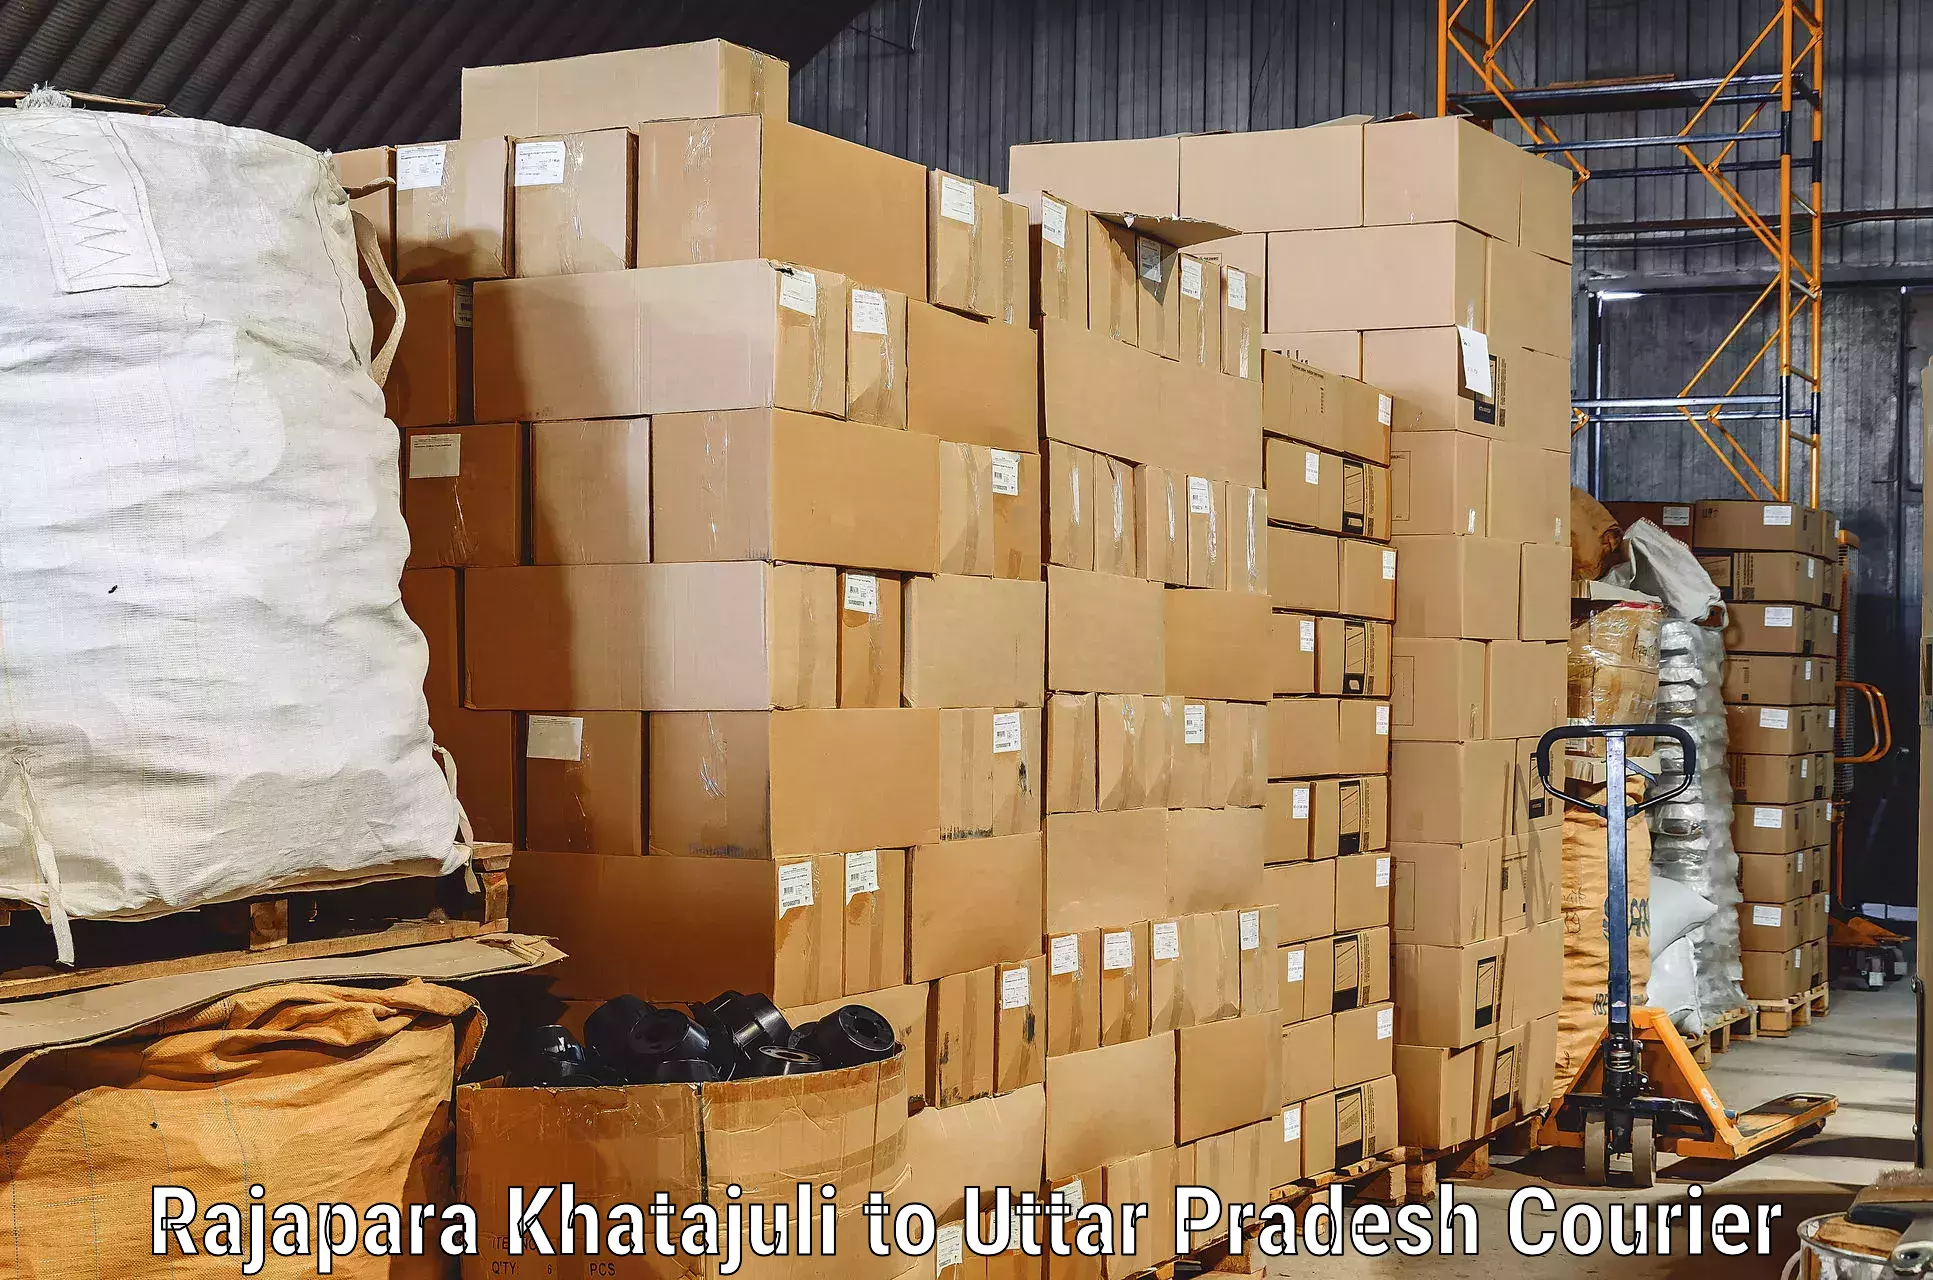 Skilled furniture transporters Rajapara Khatajuli to Mehnagar